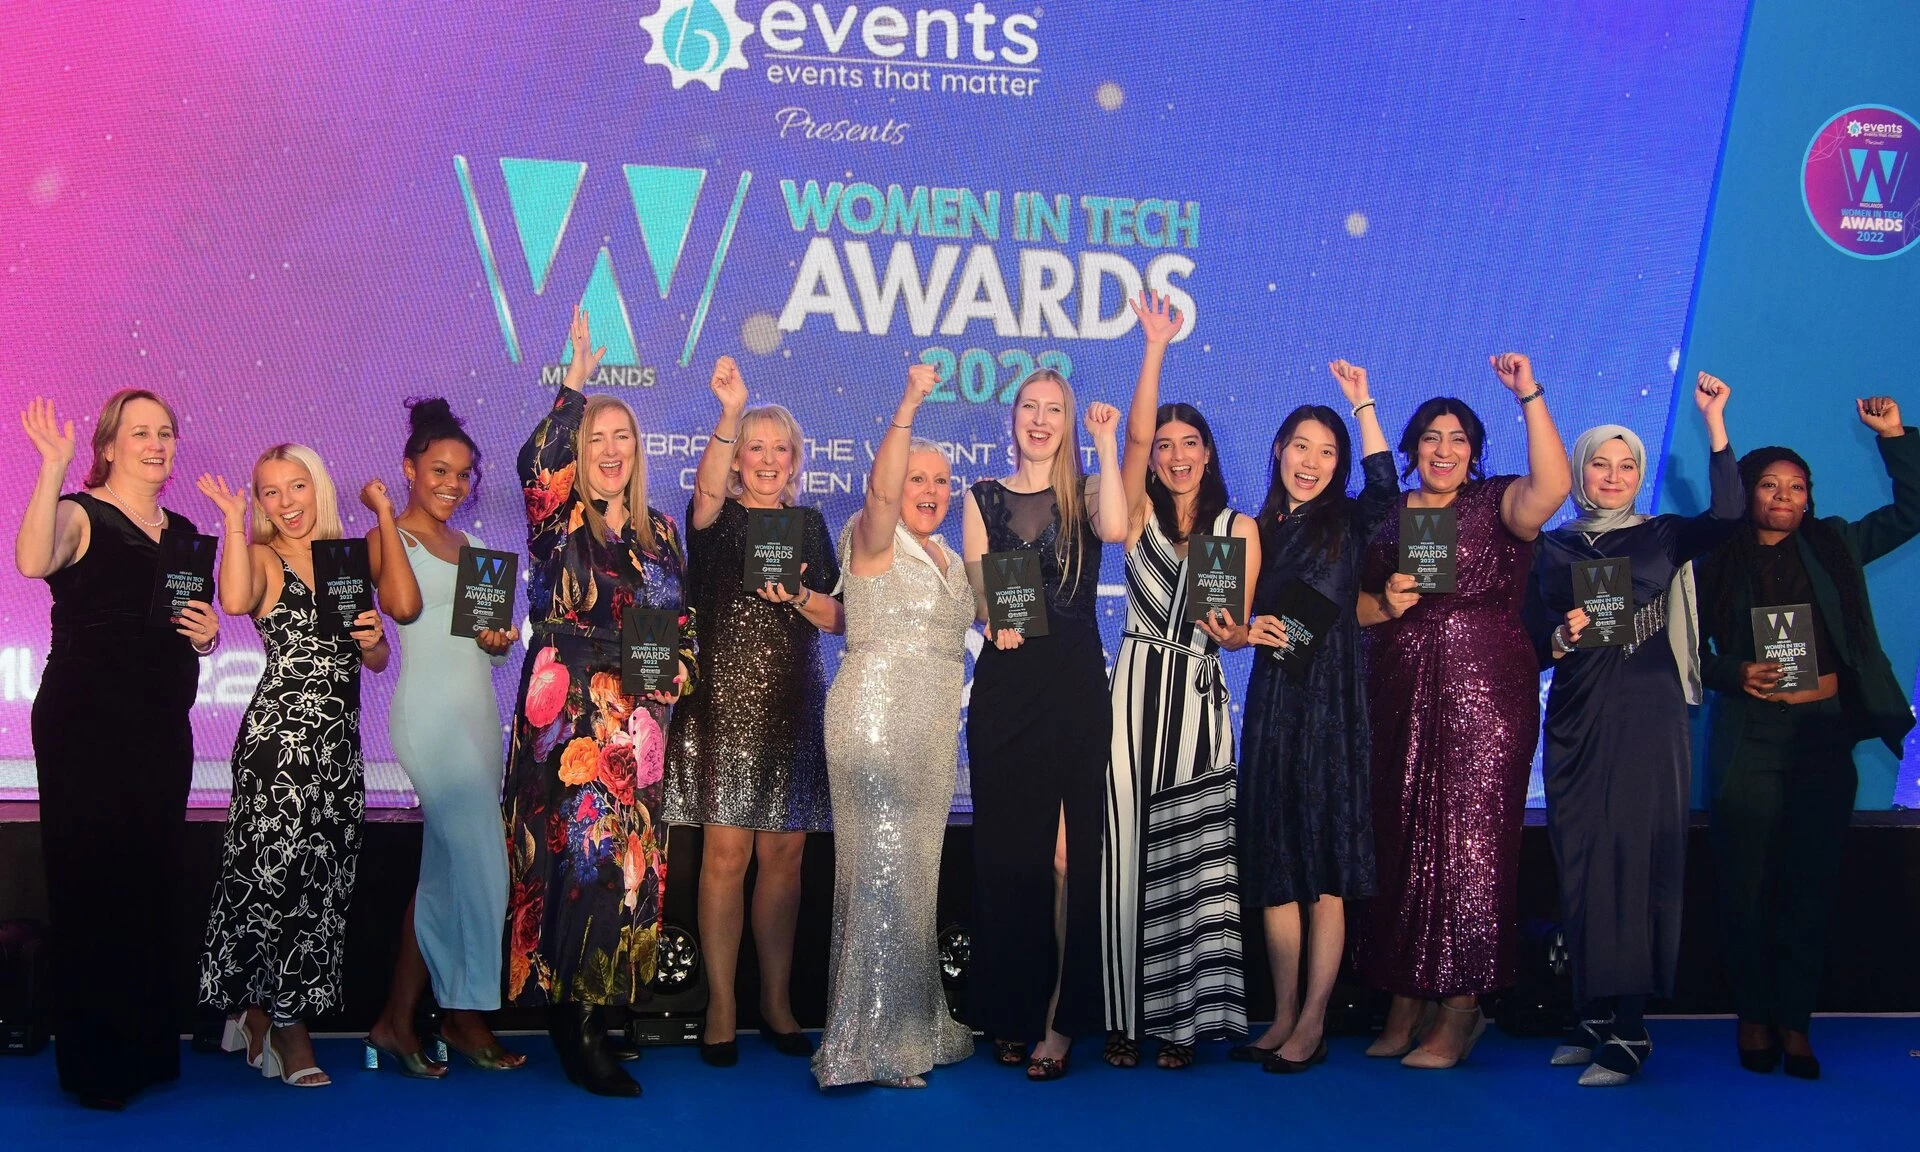 Midlands Women in Tech Awards 2022 Winners